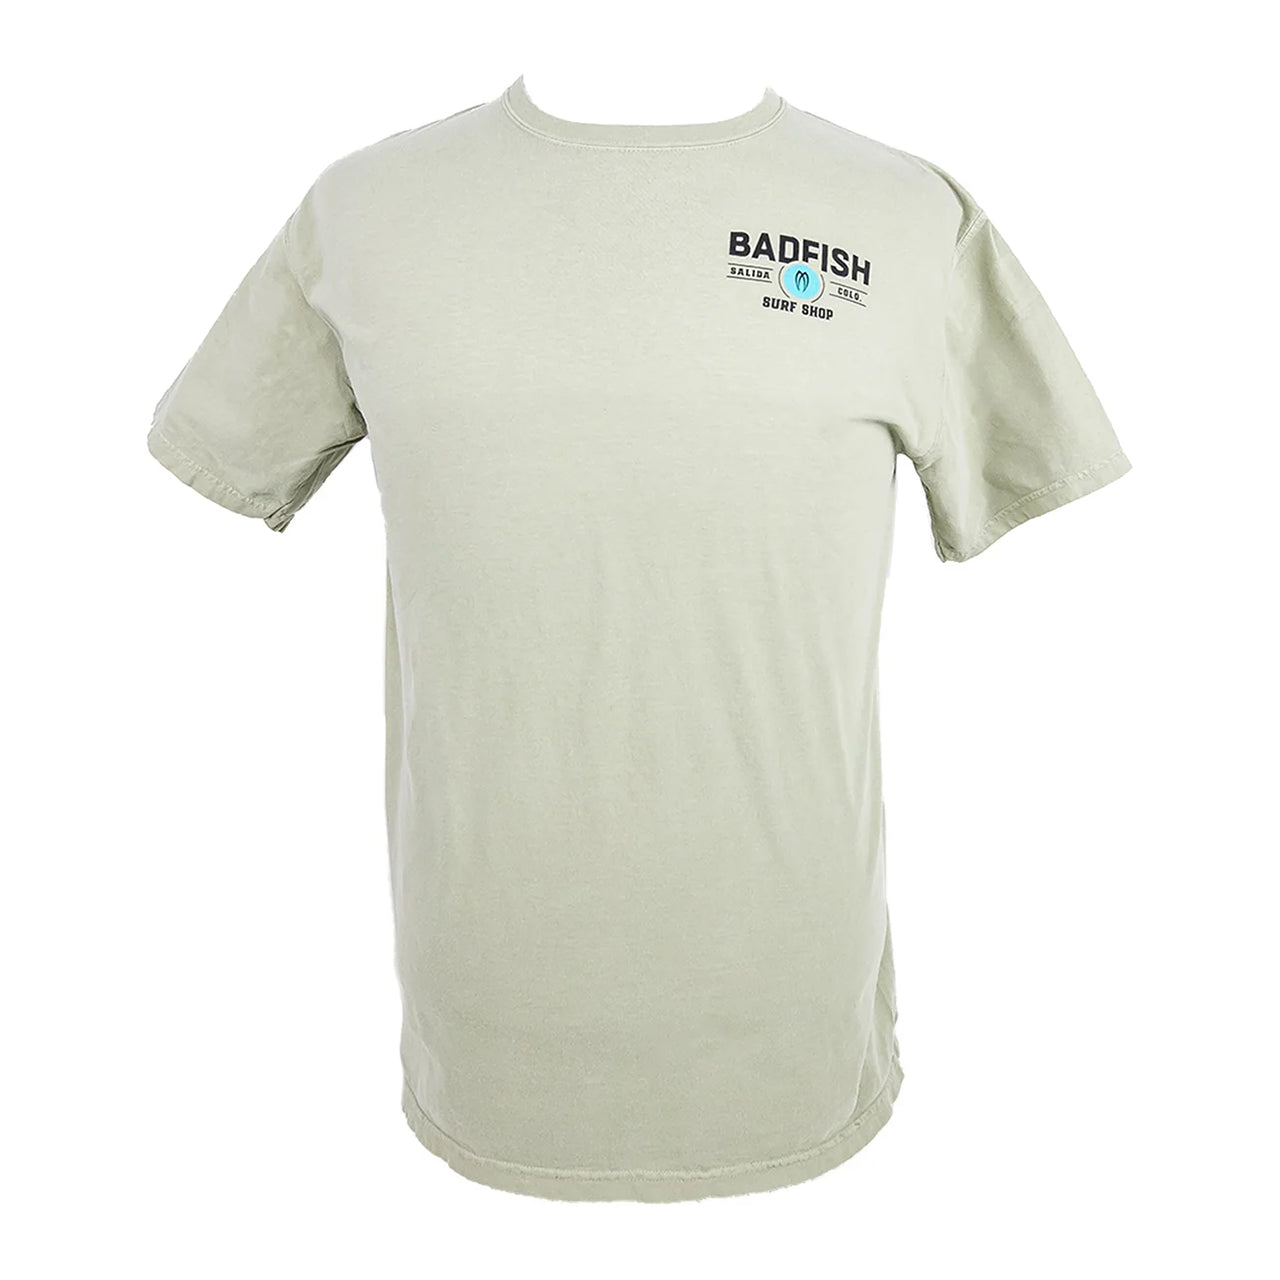 Badfish Surf Shop T-Shirt